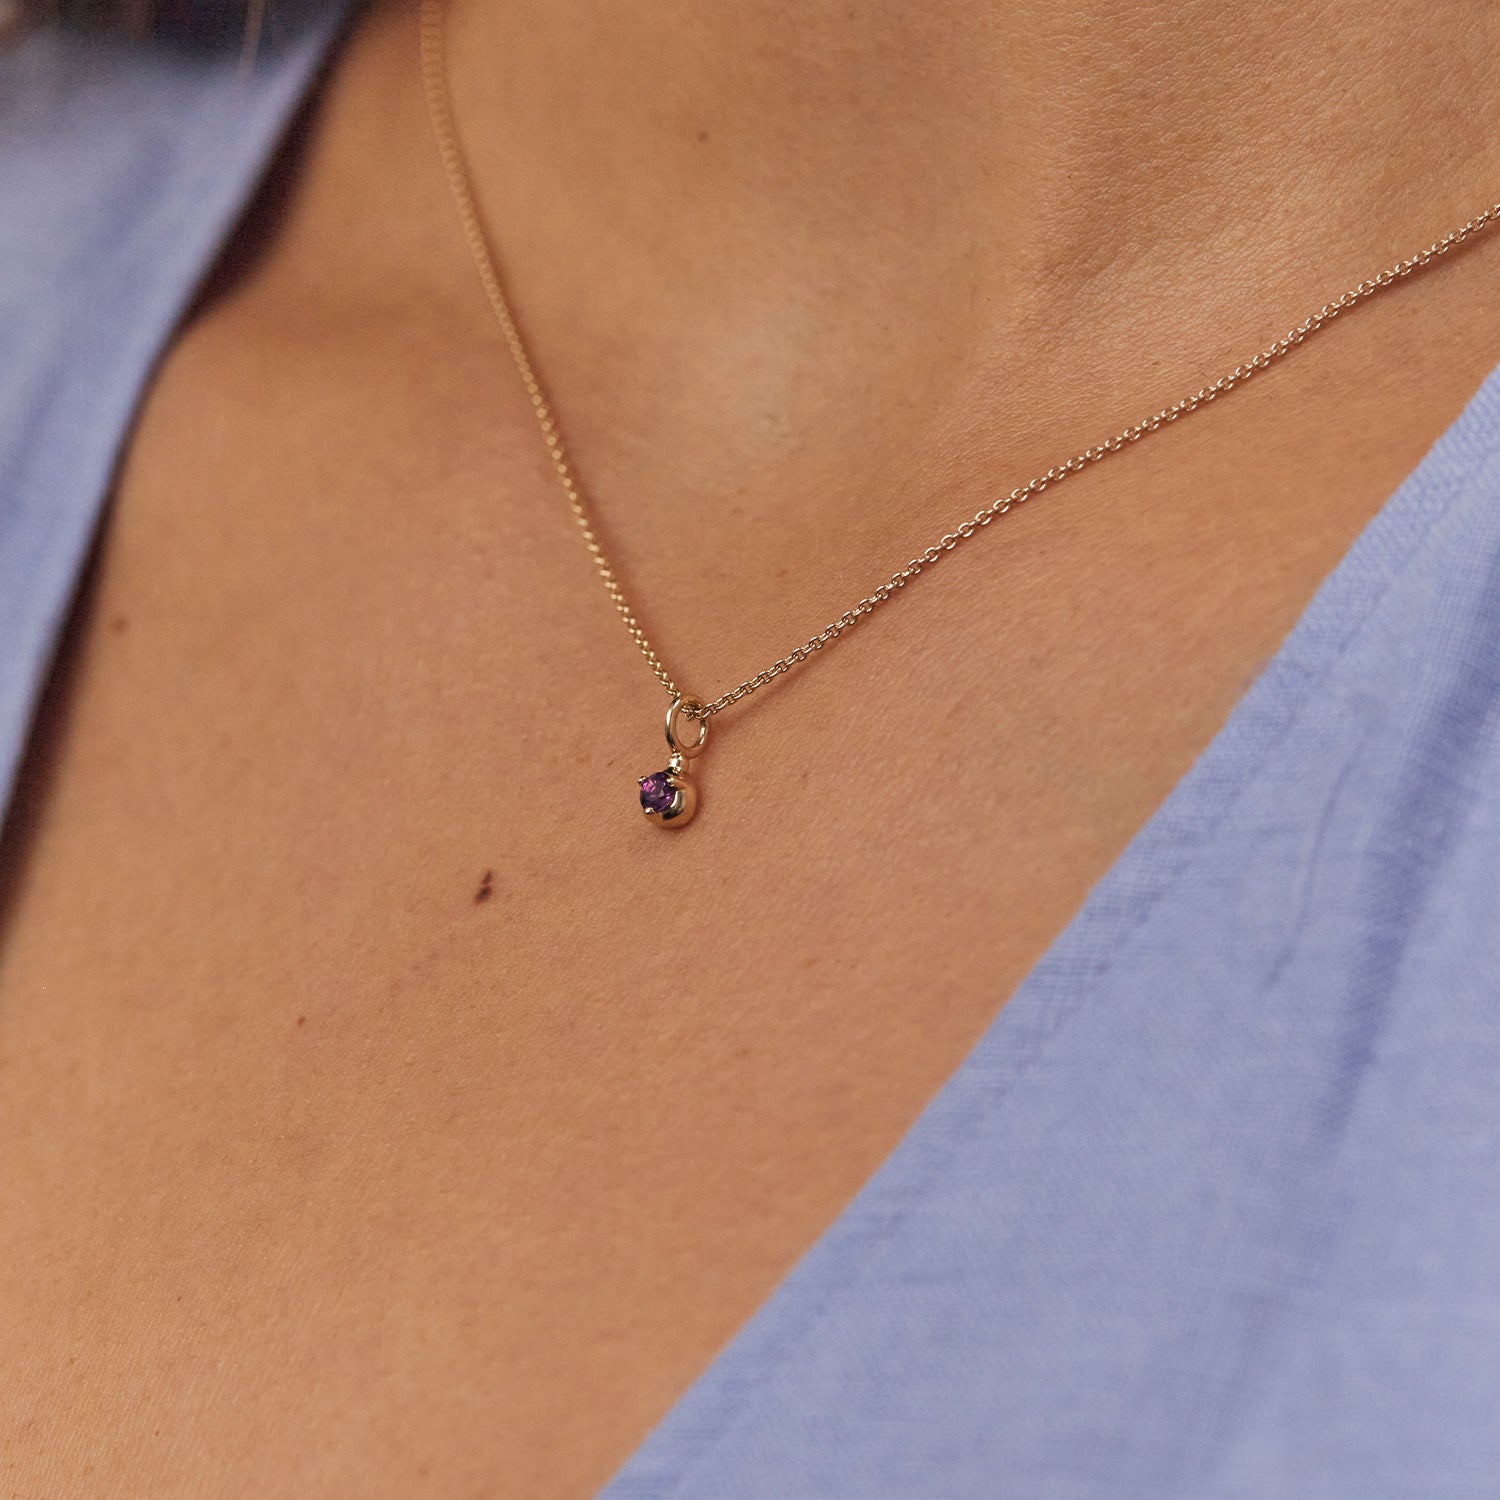 Mini Birthstone Necklace